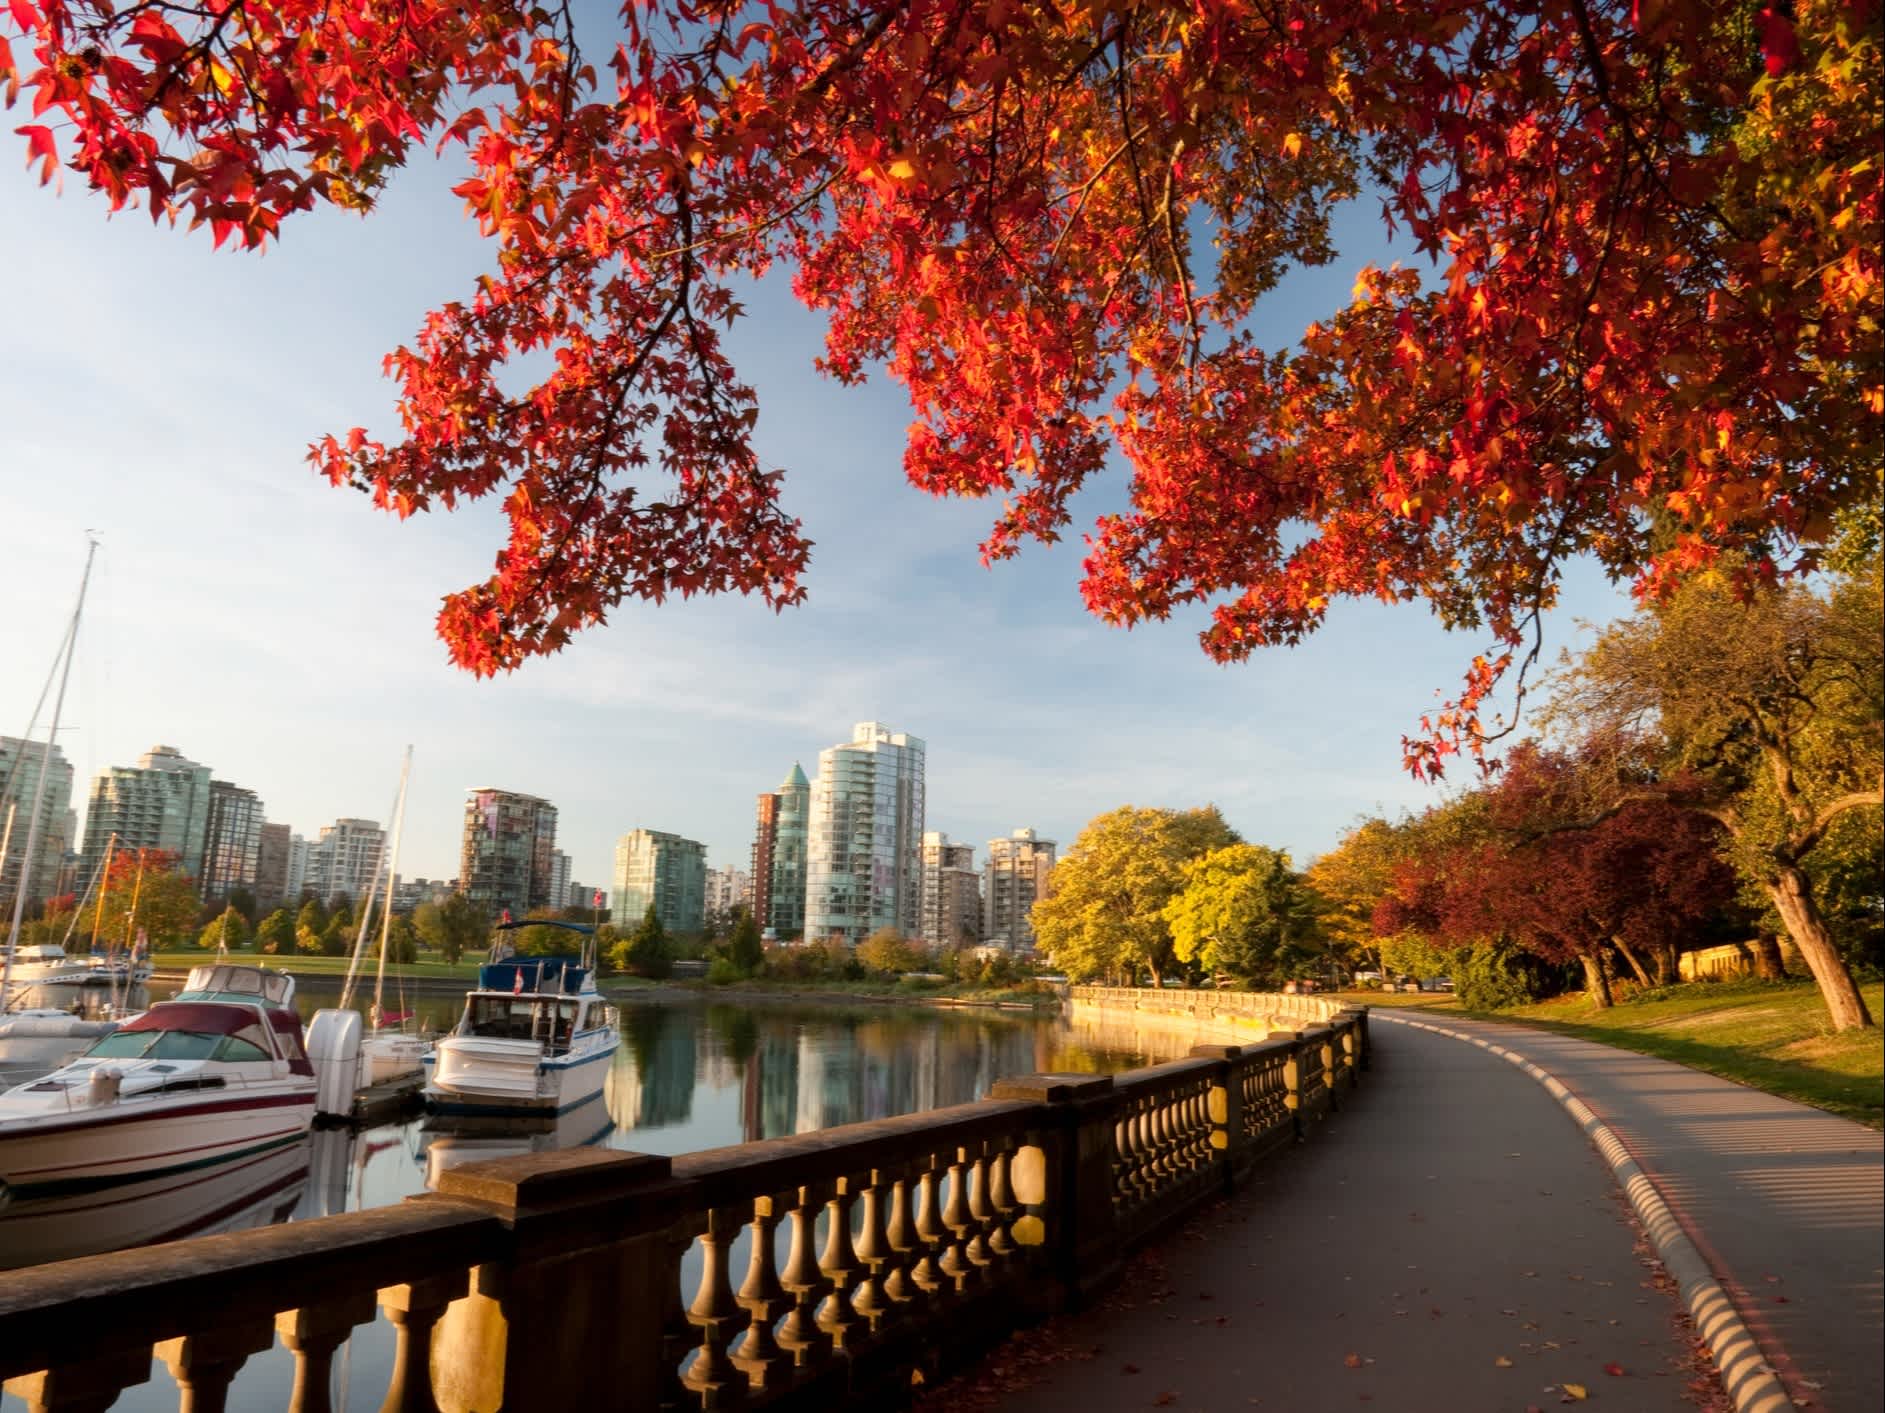 Le parc Stanley en automne, avec ses feuilles rouges et ses bateaux.